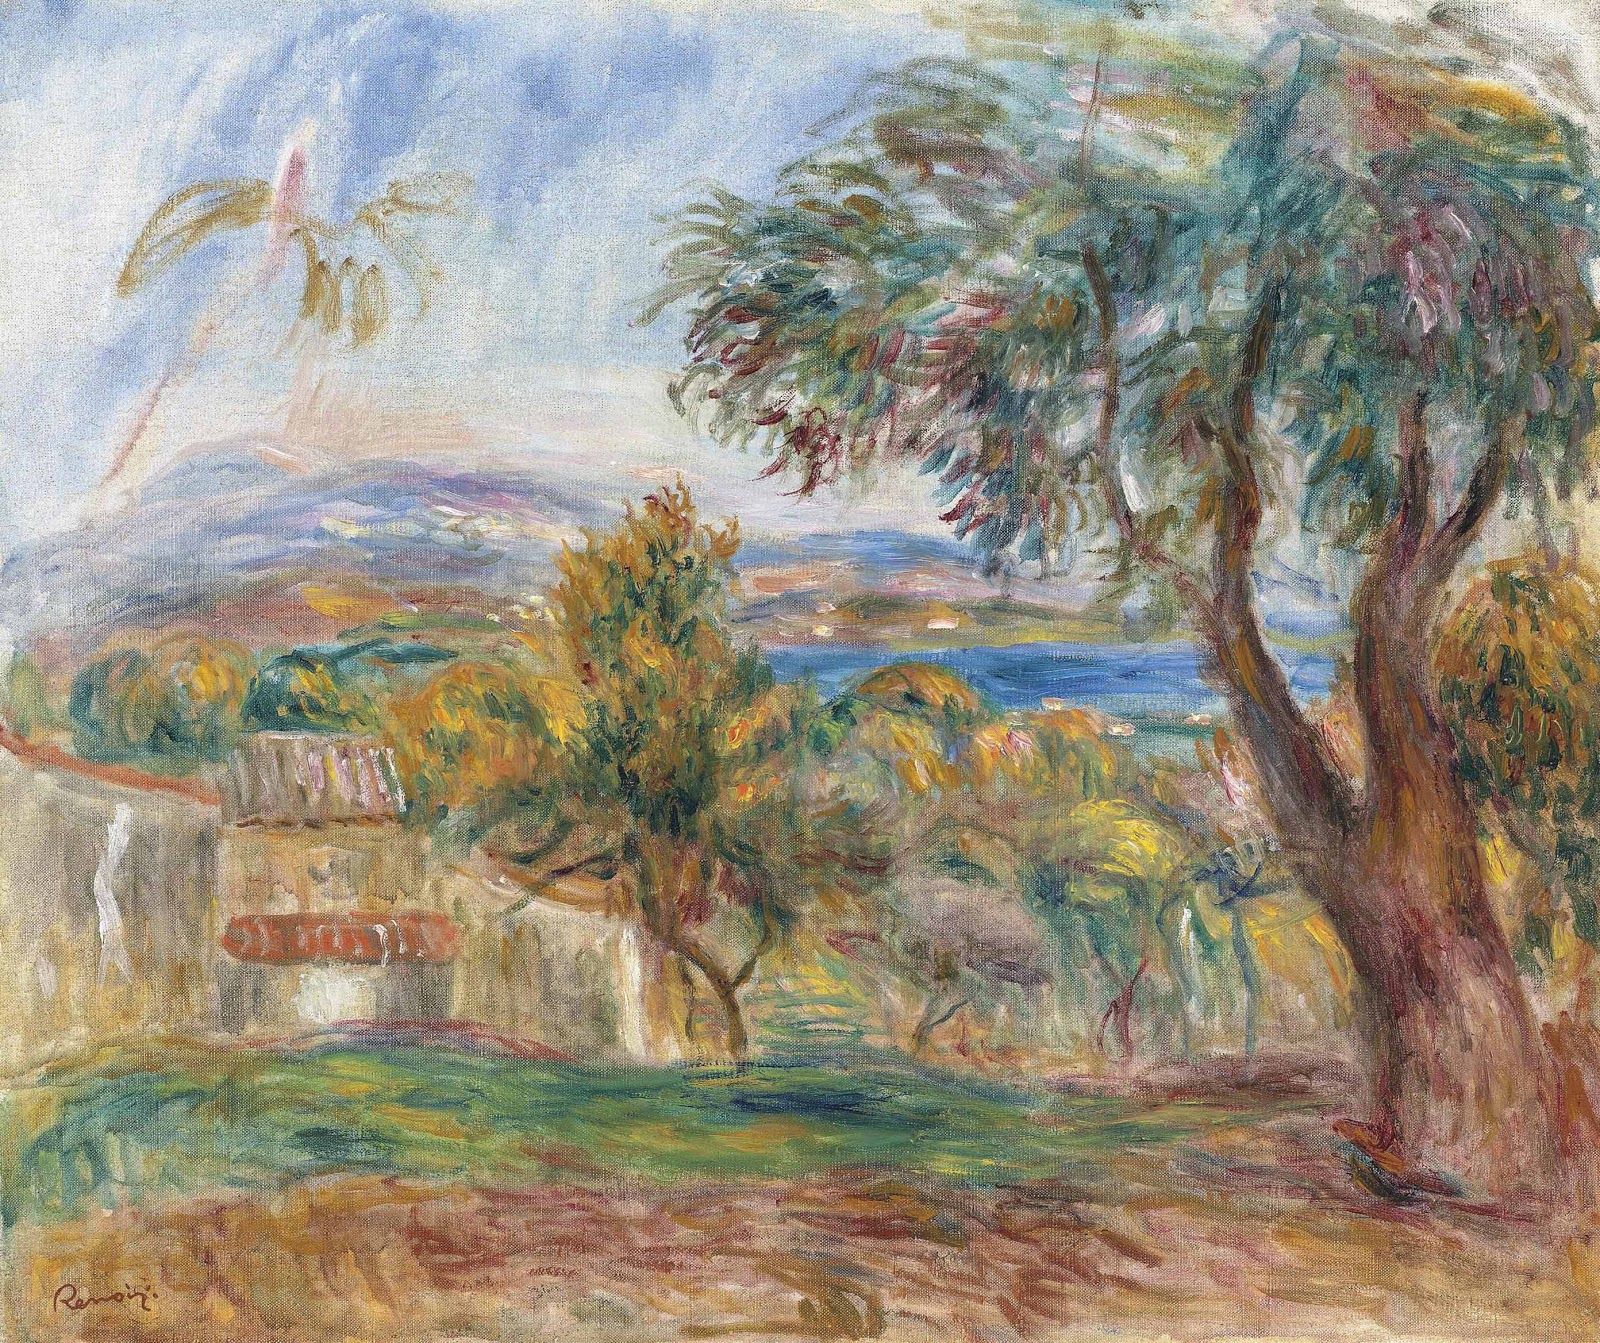 Pierre+Auguste+Renoir-1841-1-19 (840).jpg